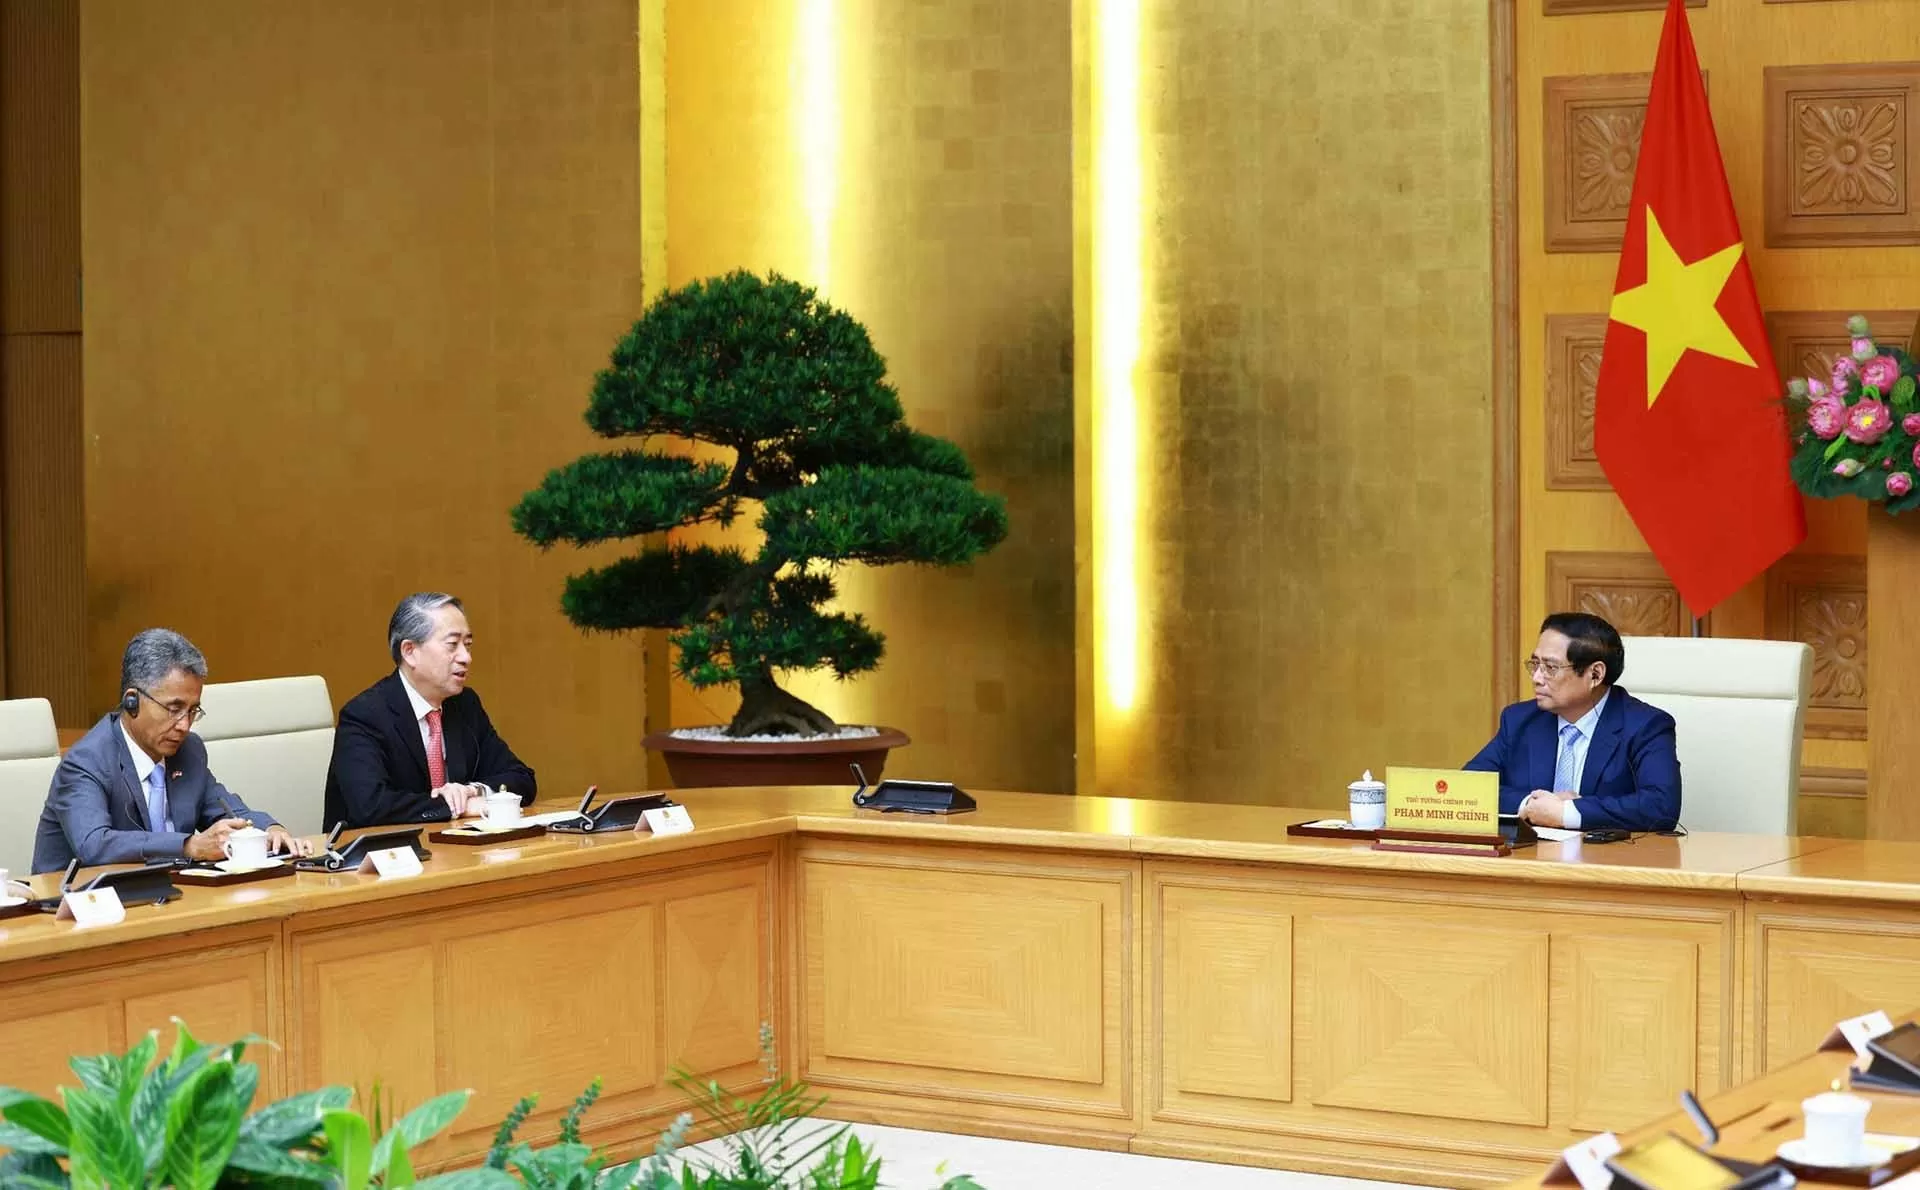 Thủ tướng Phạm Minh Chính tiếp Đại sứ Trung Quốc chào từ biệt, kết thúc nhiệm kỳ công tác tại Việt Nam